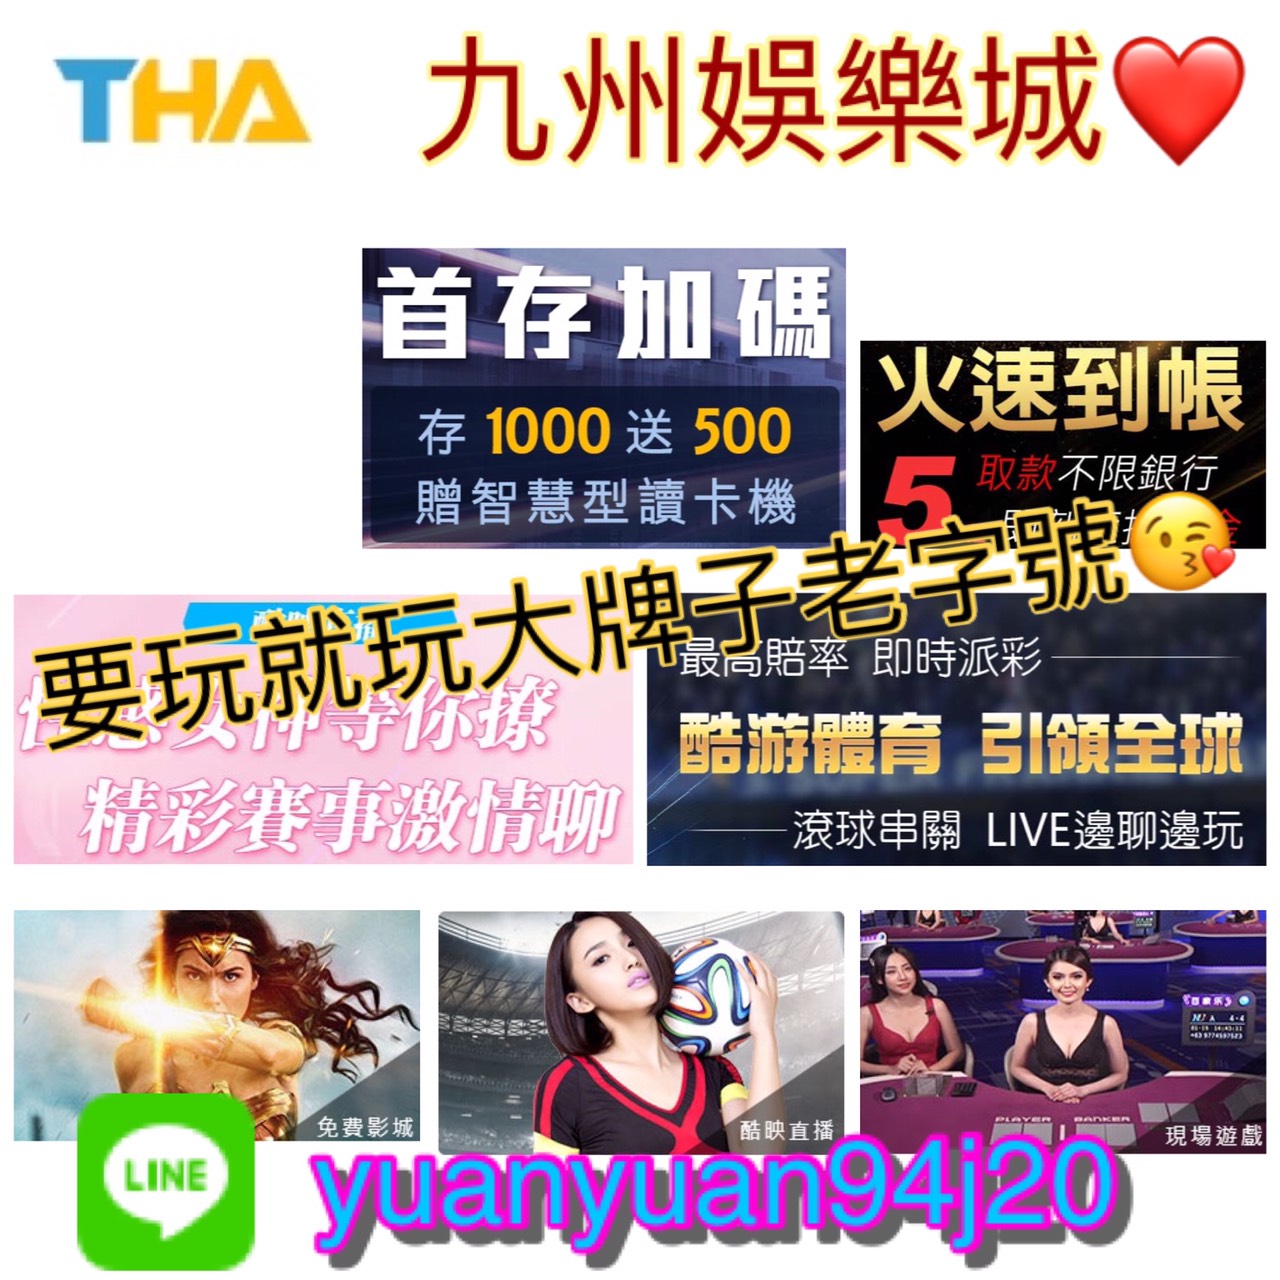 超級推薦   THA九州娛樂城   台灣第一大平台